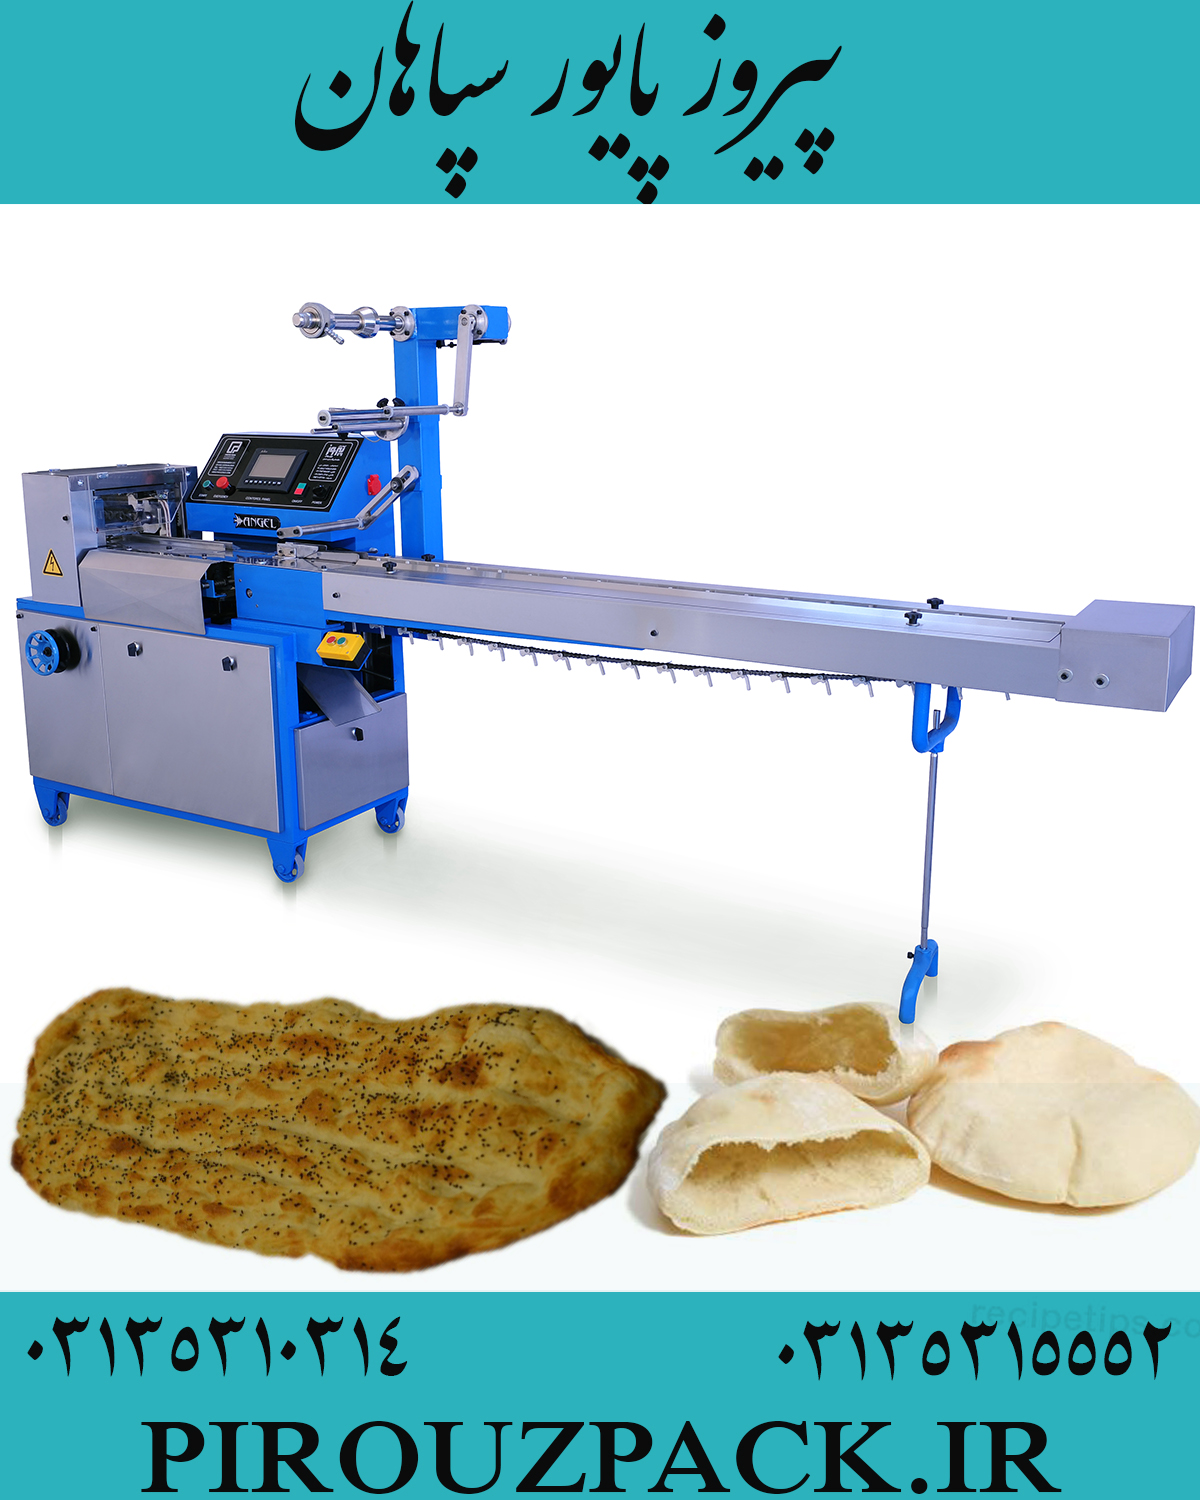 دستگاه بسته بندی نان لواش در ماشین سازی پیروزپک